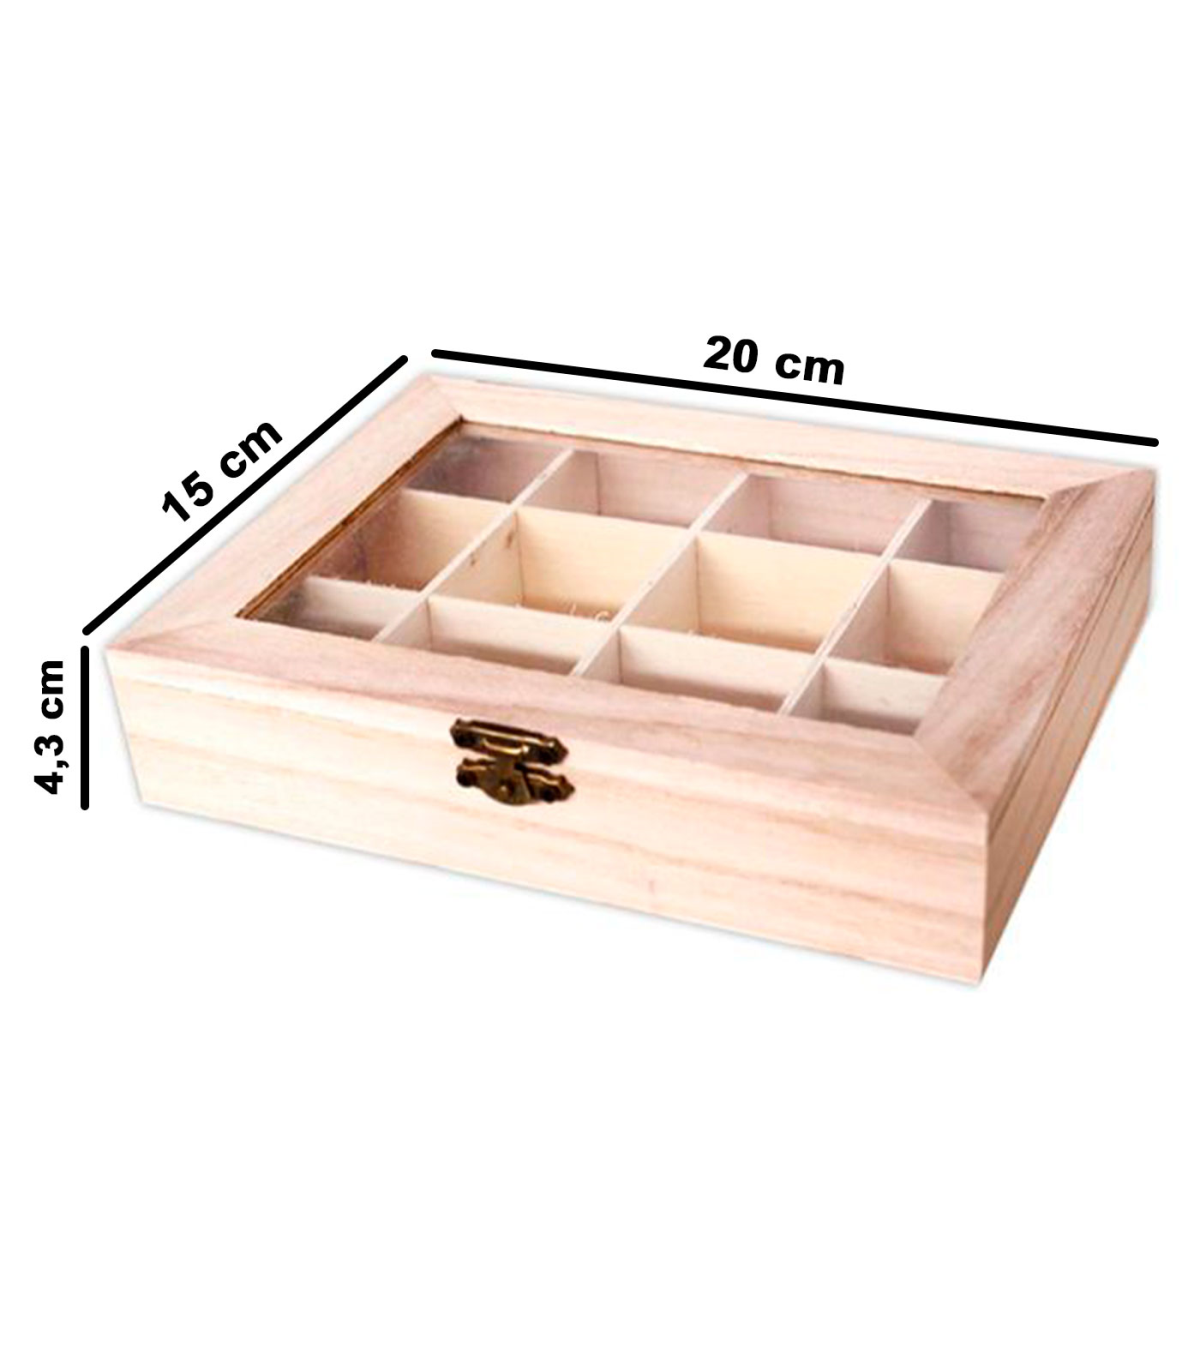 Tradineur - Caja de madera con 12 compartimentos y tapa con cristal,  expositor de joyas, organizador, joyero, collares, anillos